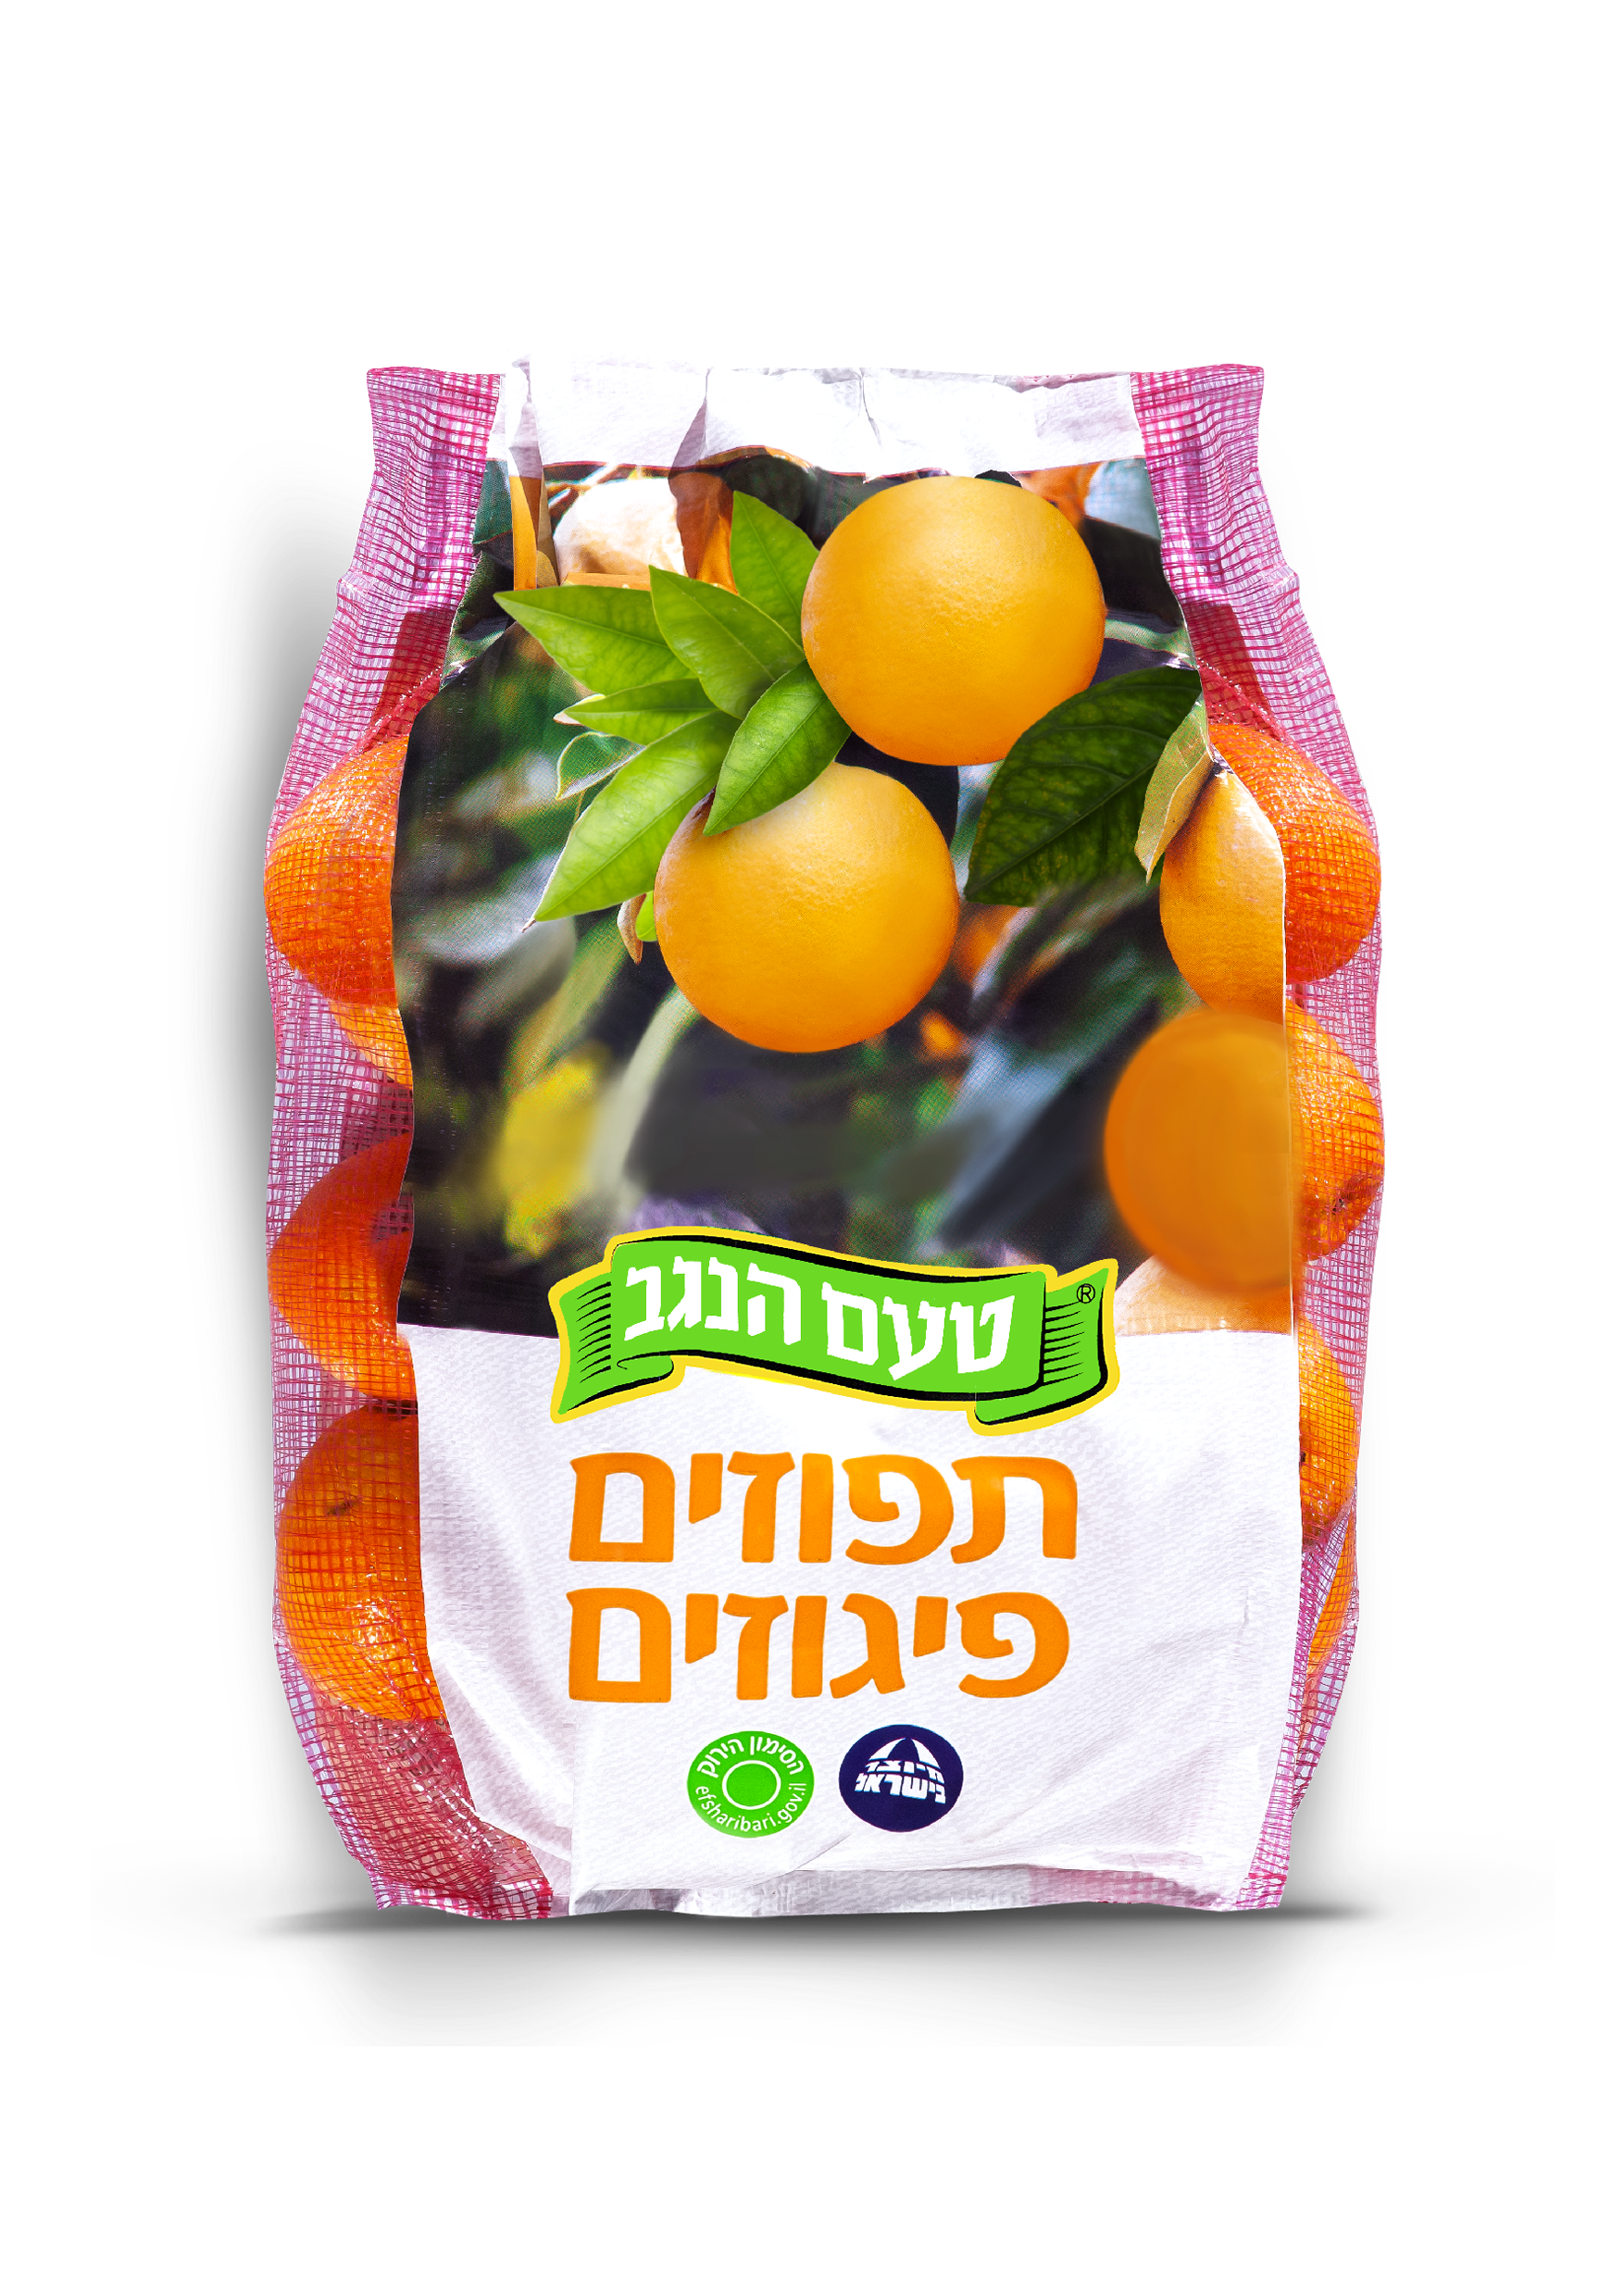 A net bag of quality oranges